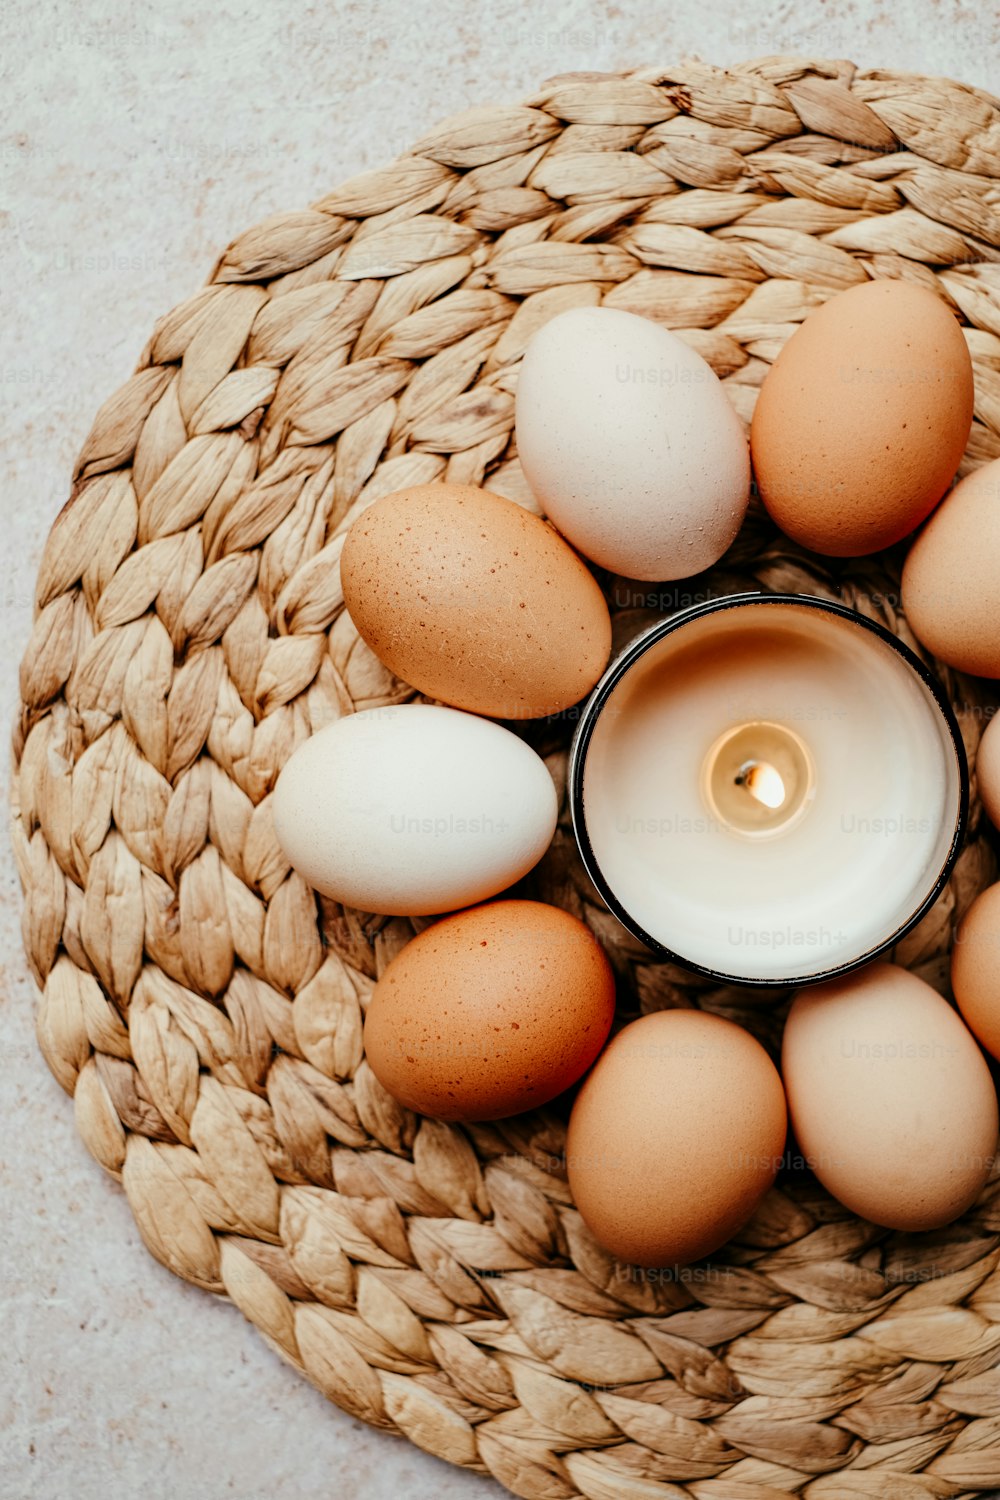 Una candela è circondata da uova in un cesto